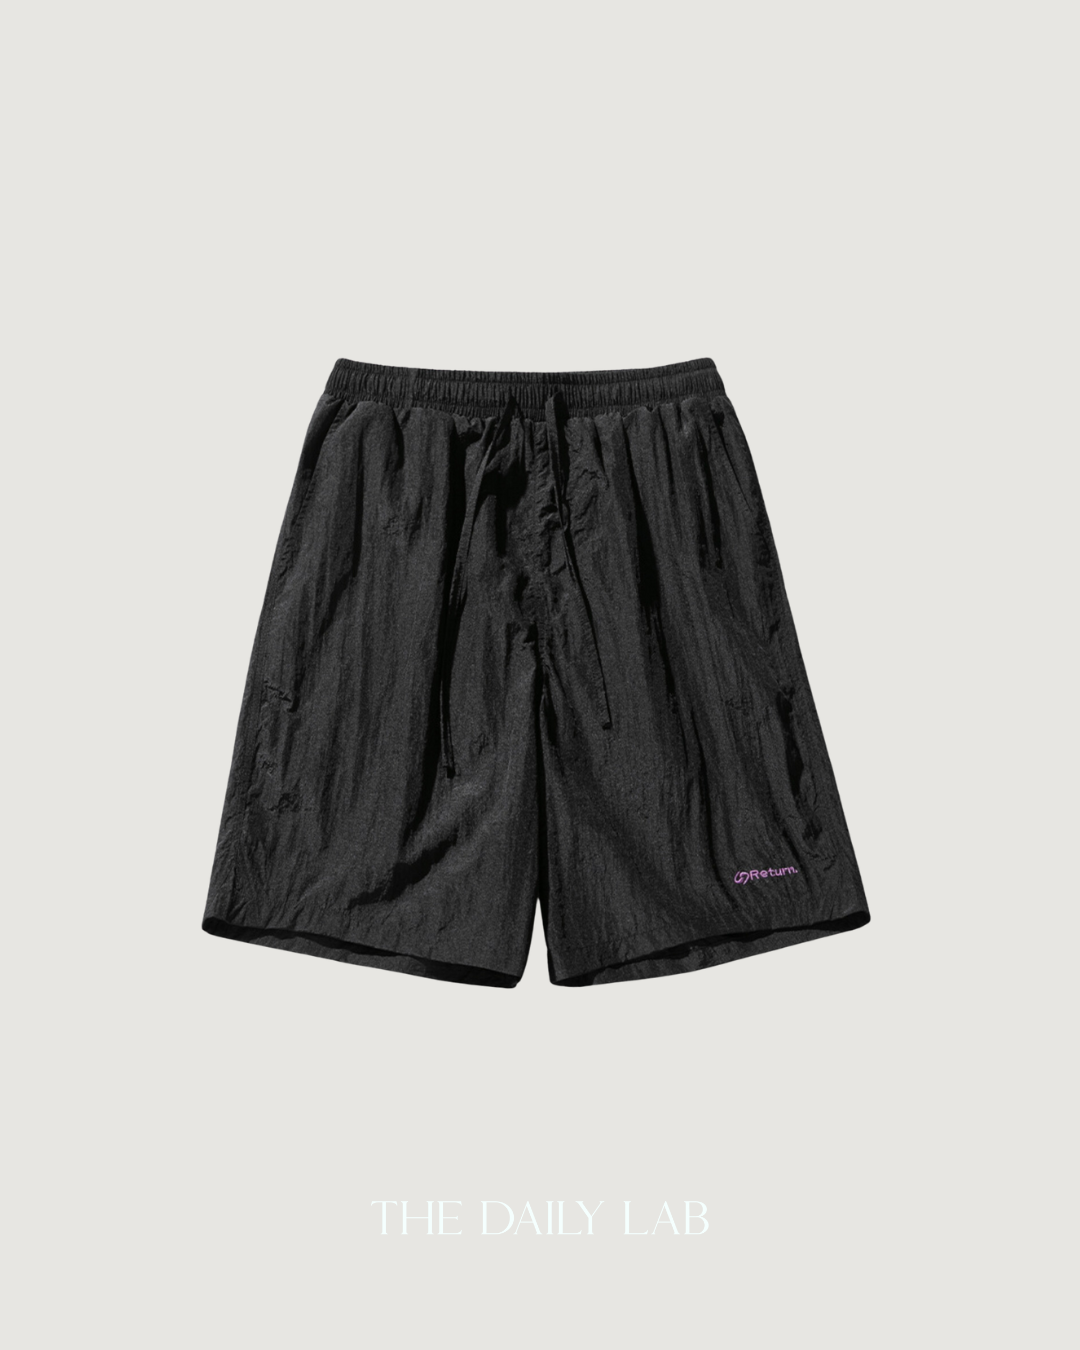 Metallic Nylon Shorts in Black